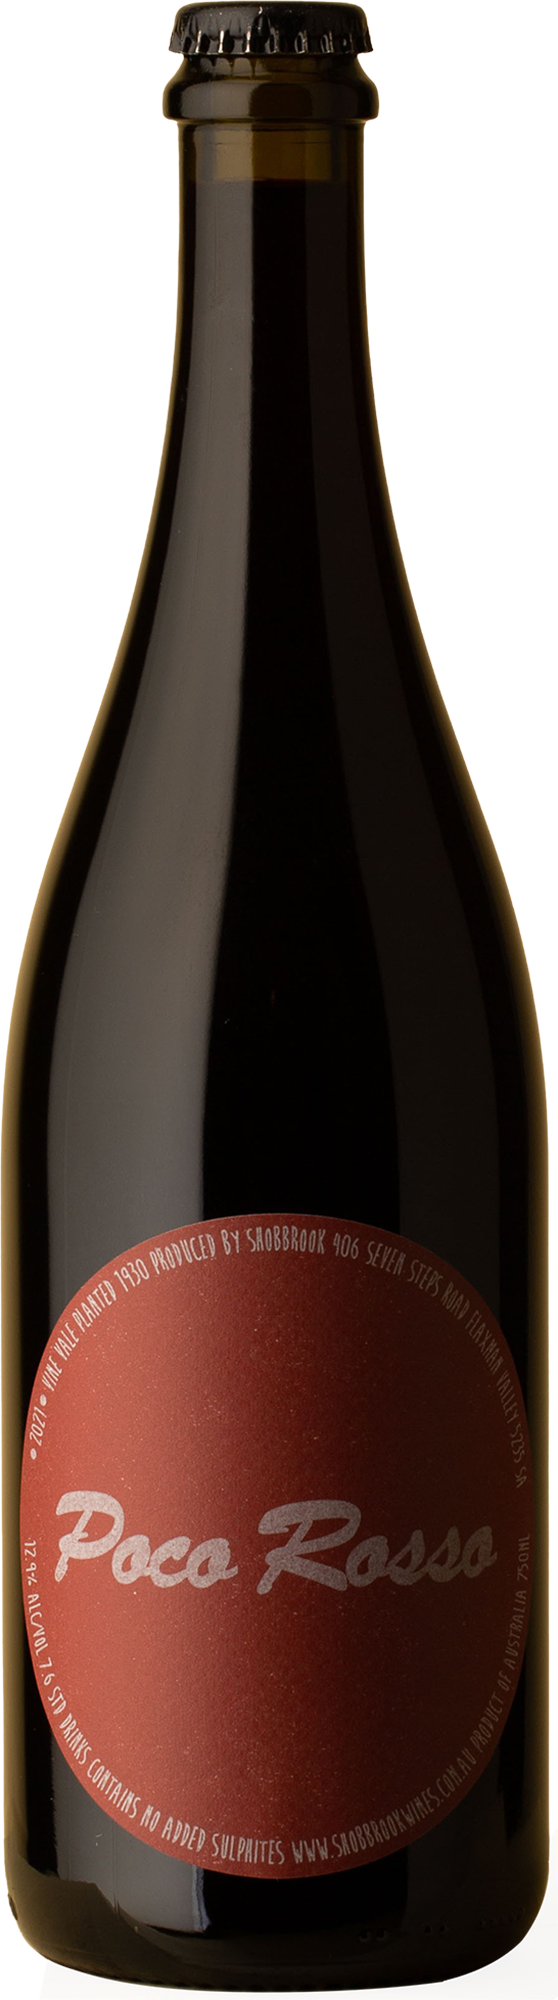 Shobbrook - Poco Rosso Syrah 2021 Red Wine